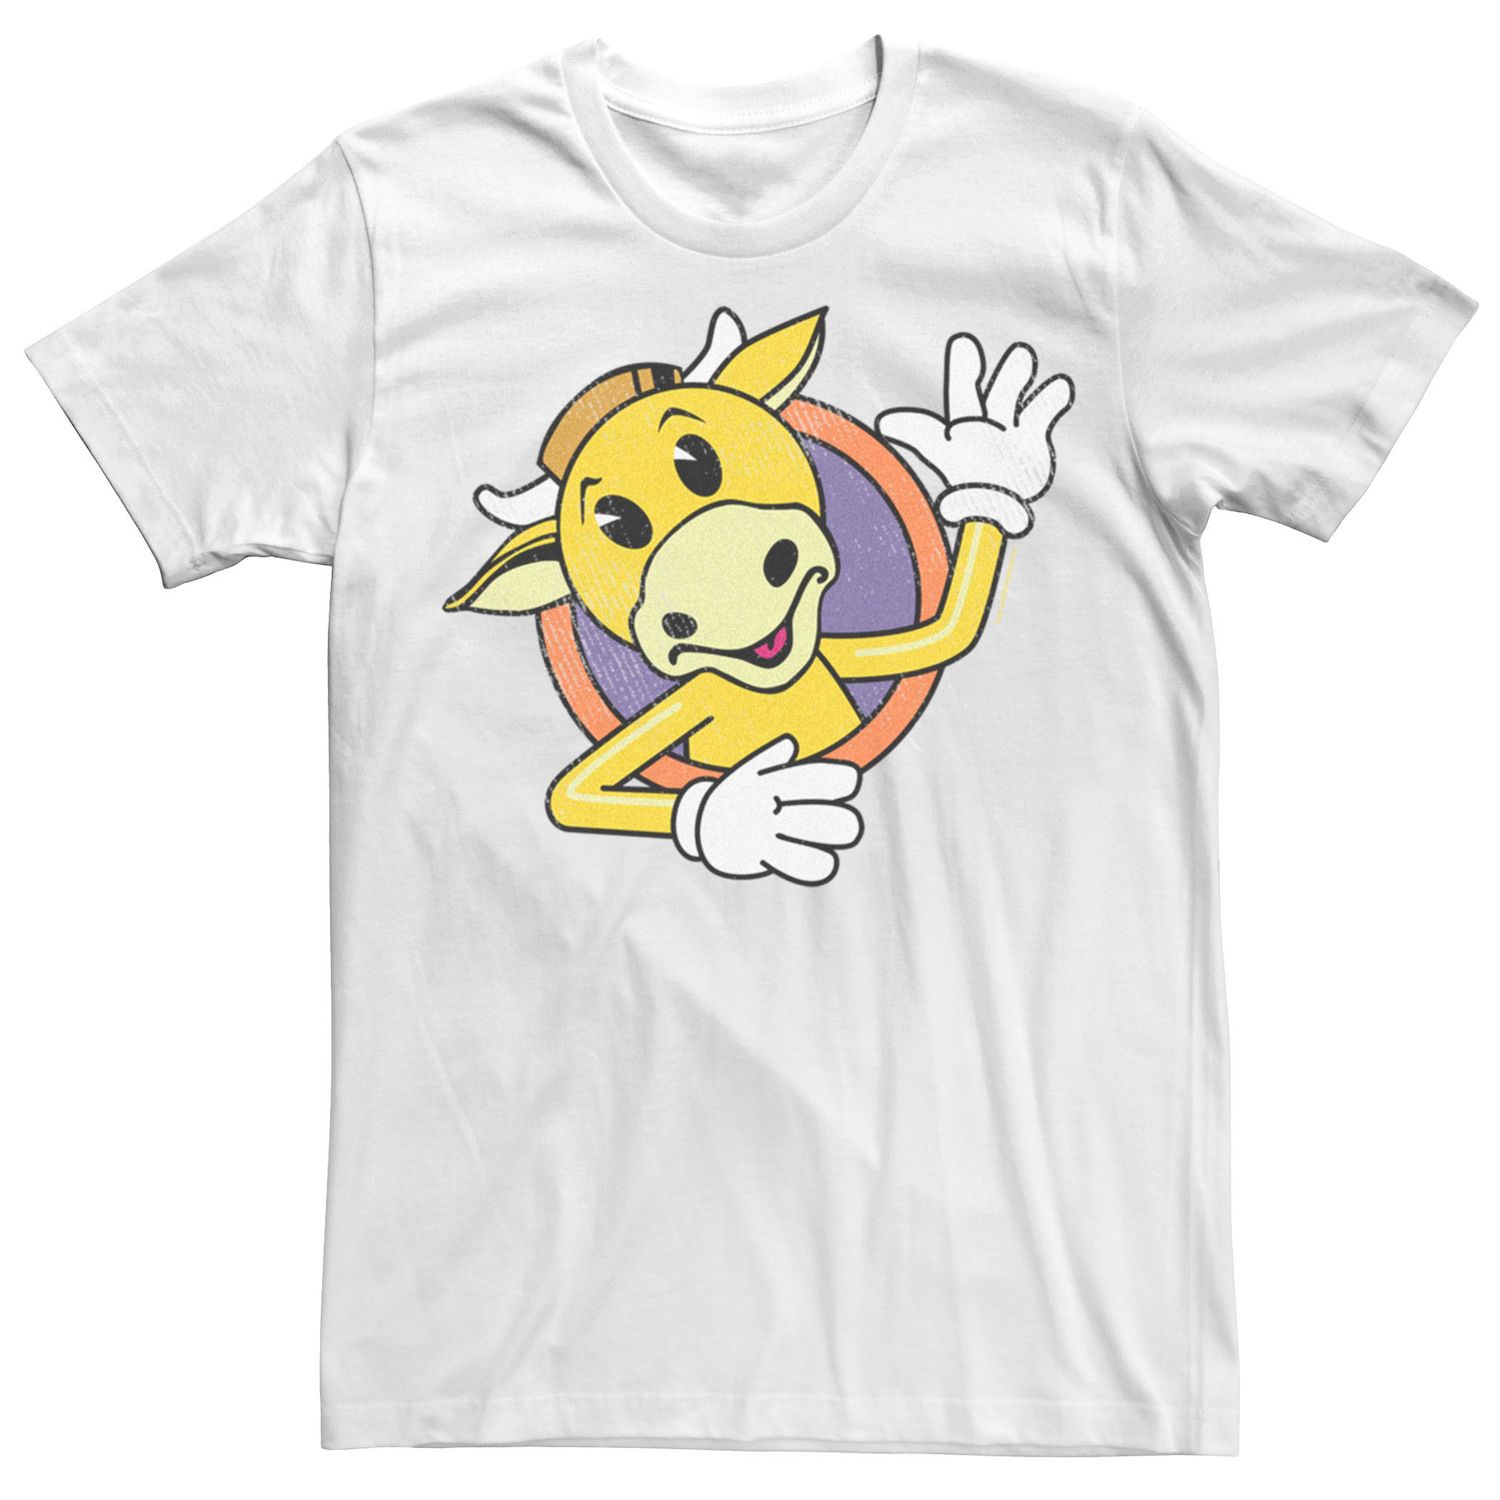 Мужская футболка с развевающимся логотипом Jay And Silent Bob Mooby's Licensed Character